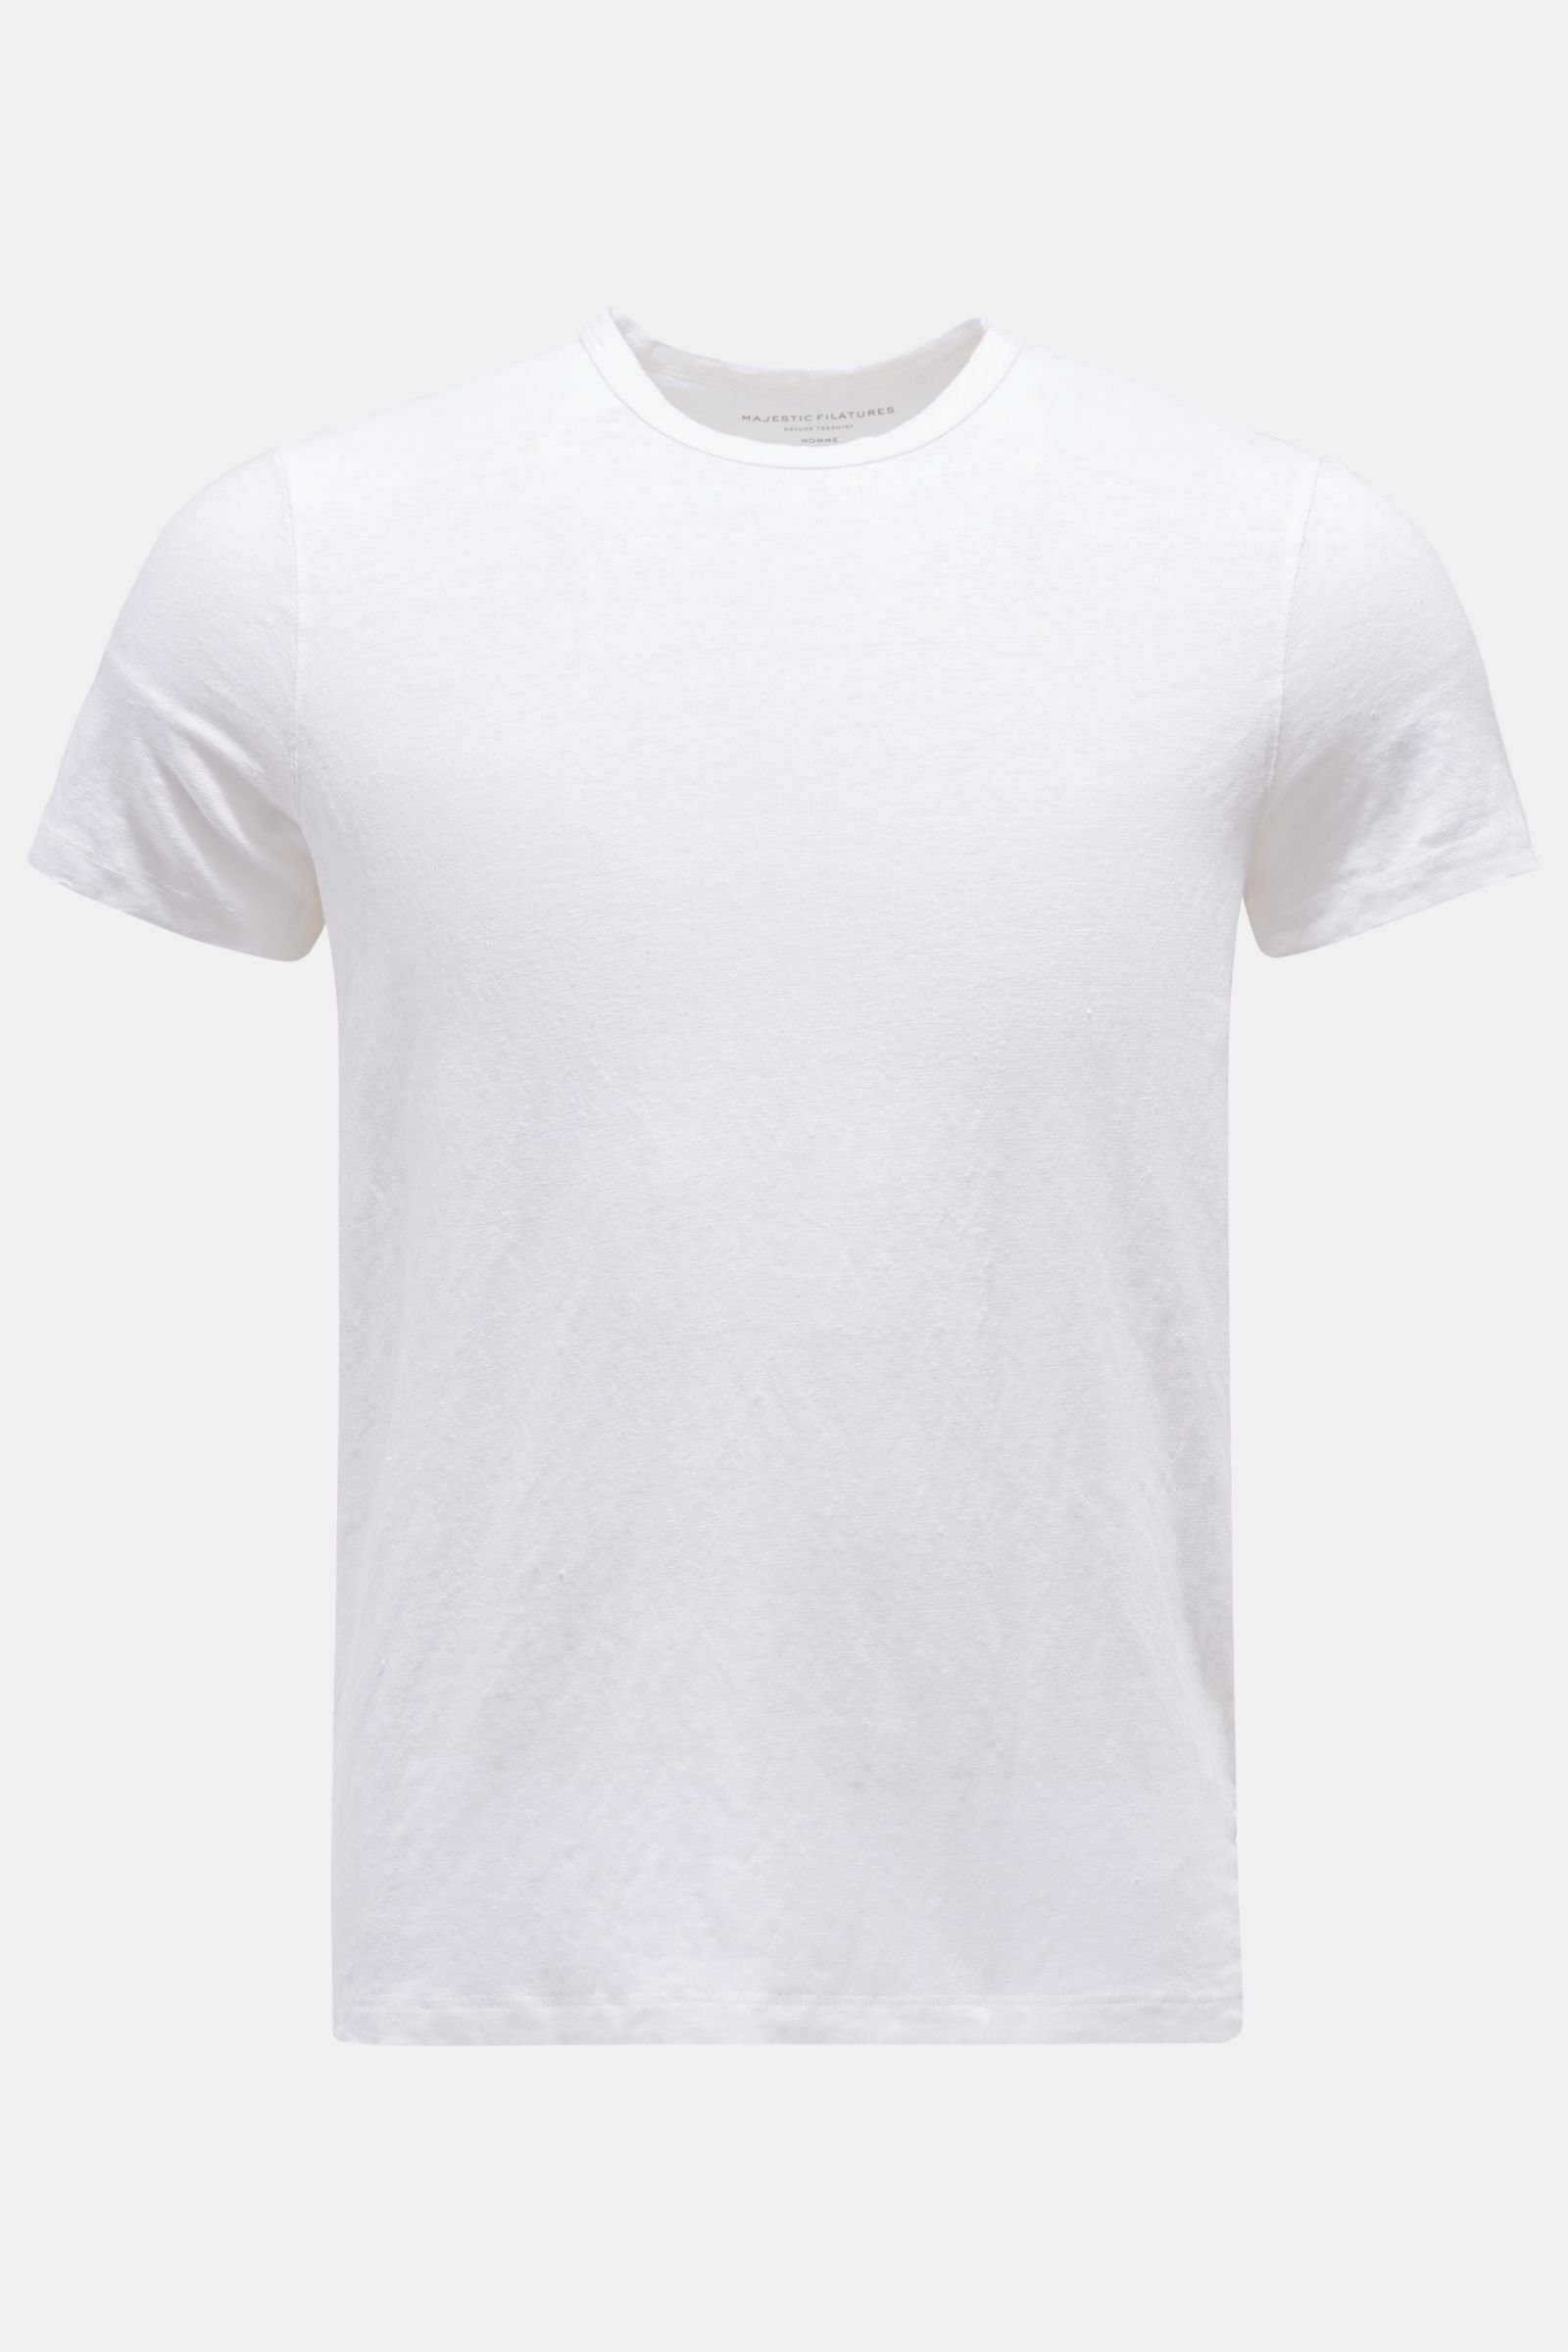 Leinen Rundhals-T-Shirt weiß